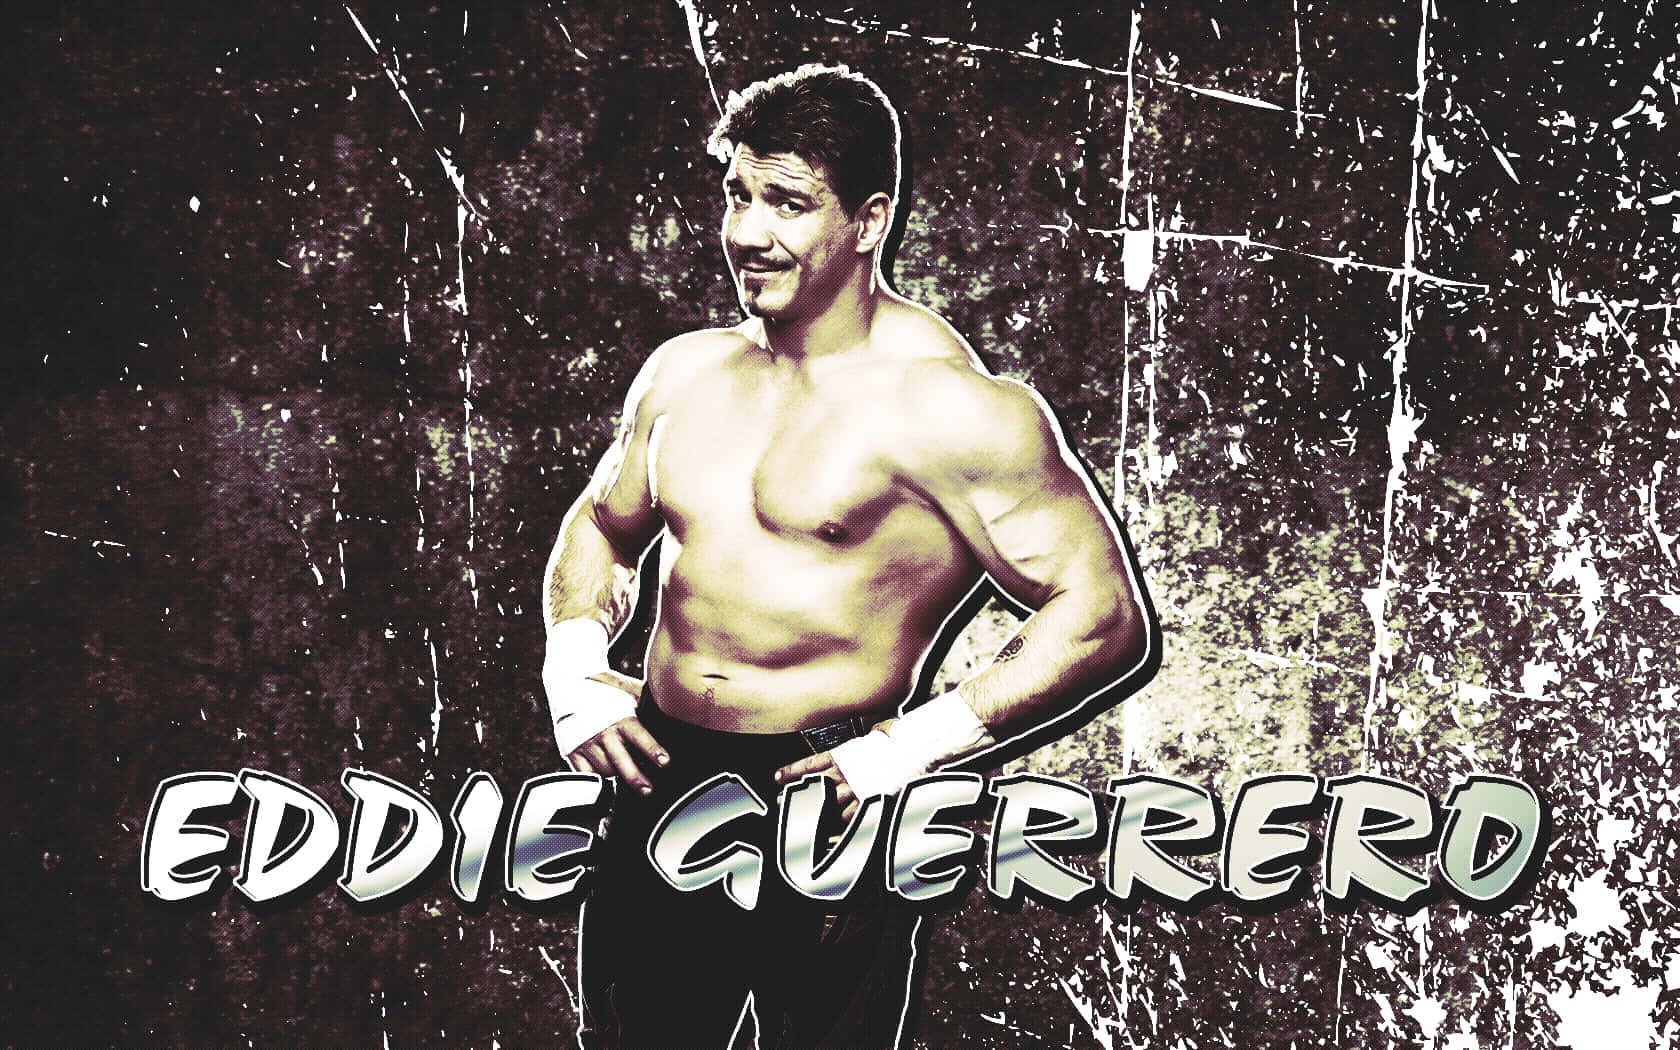 Eddie Guerrero Scratchy Graphic Art Wallpaper